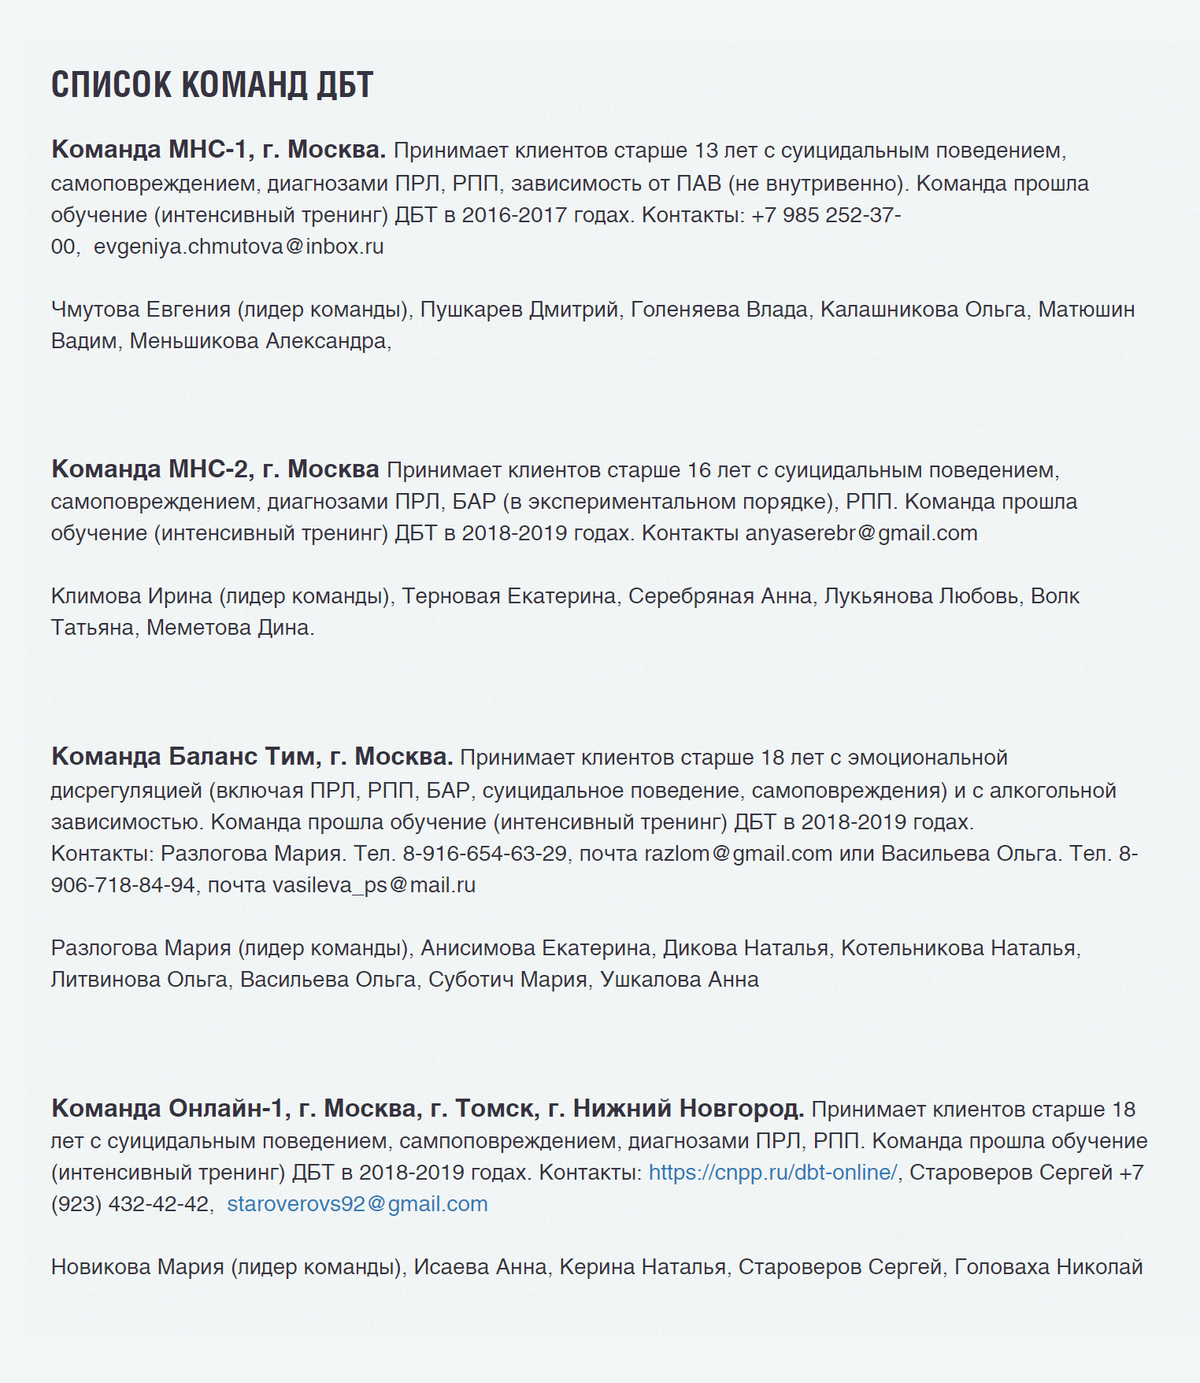 Список команд на сайте российского сообщества&nbsp;ДБТ. К ним можно попробовать присоединиться